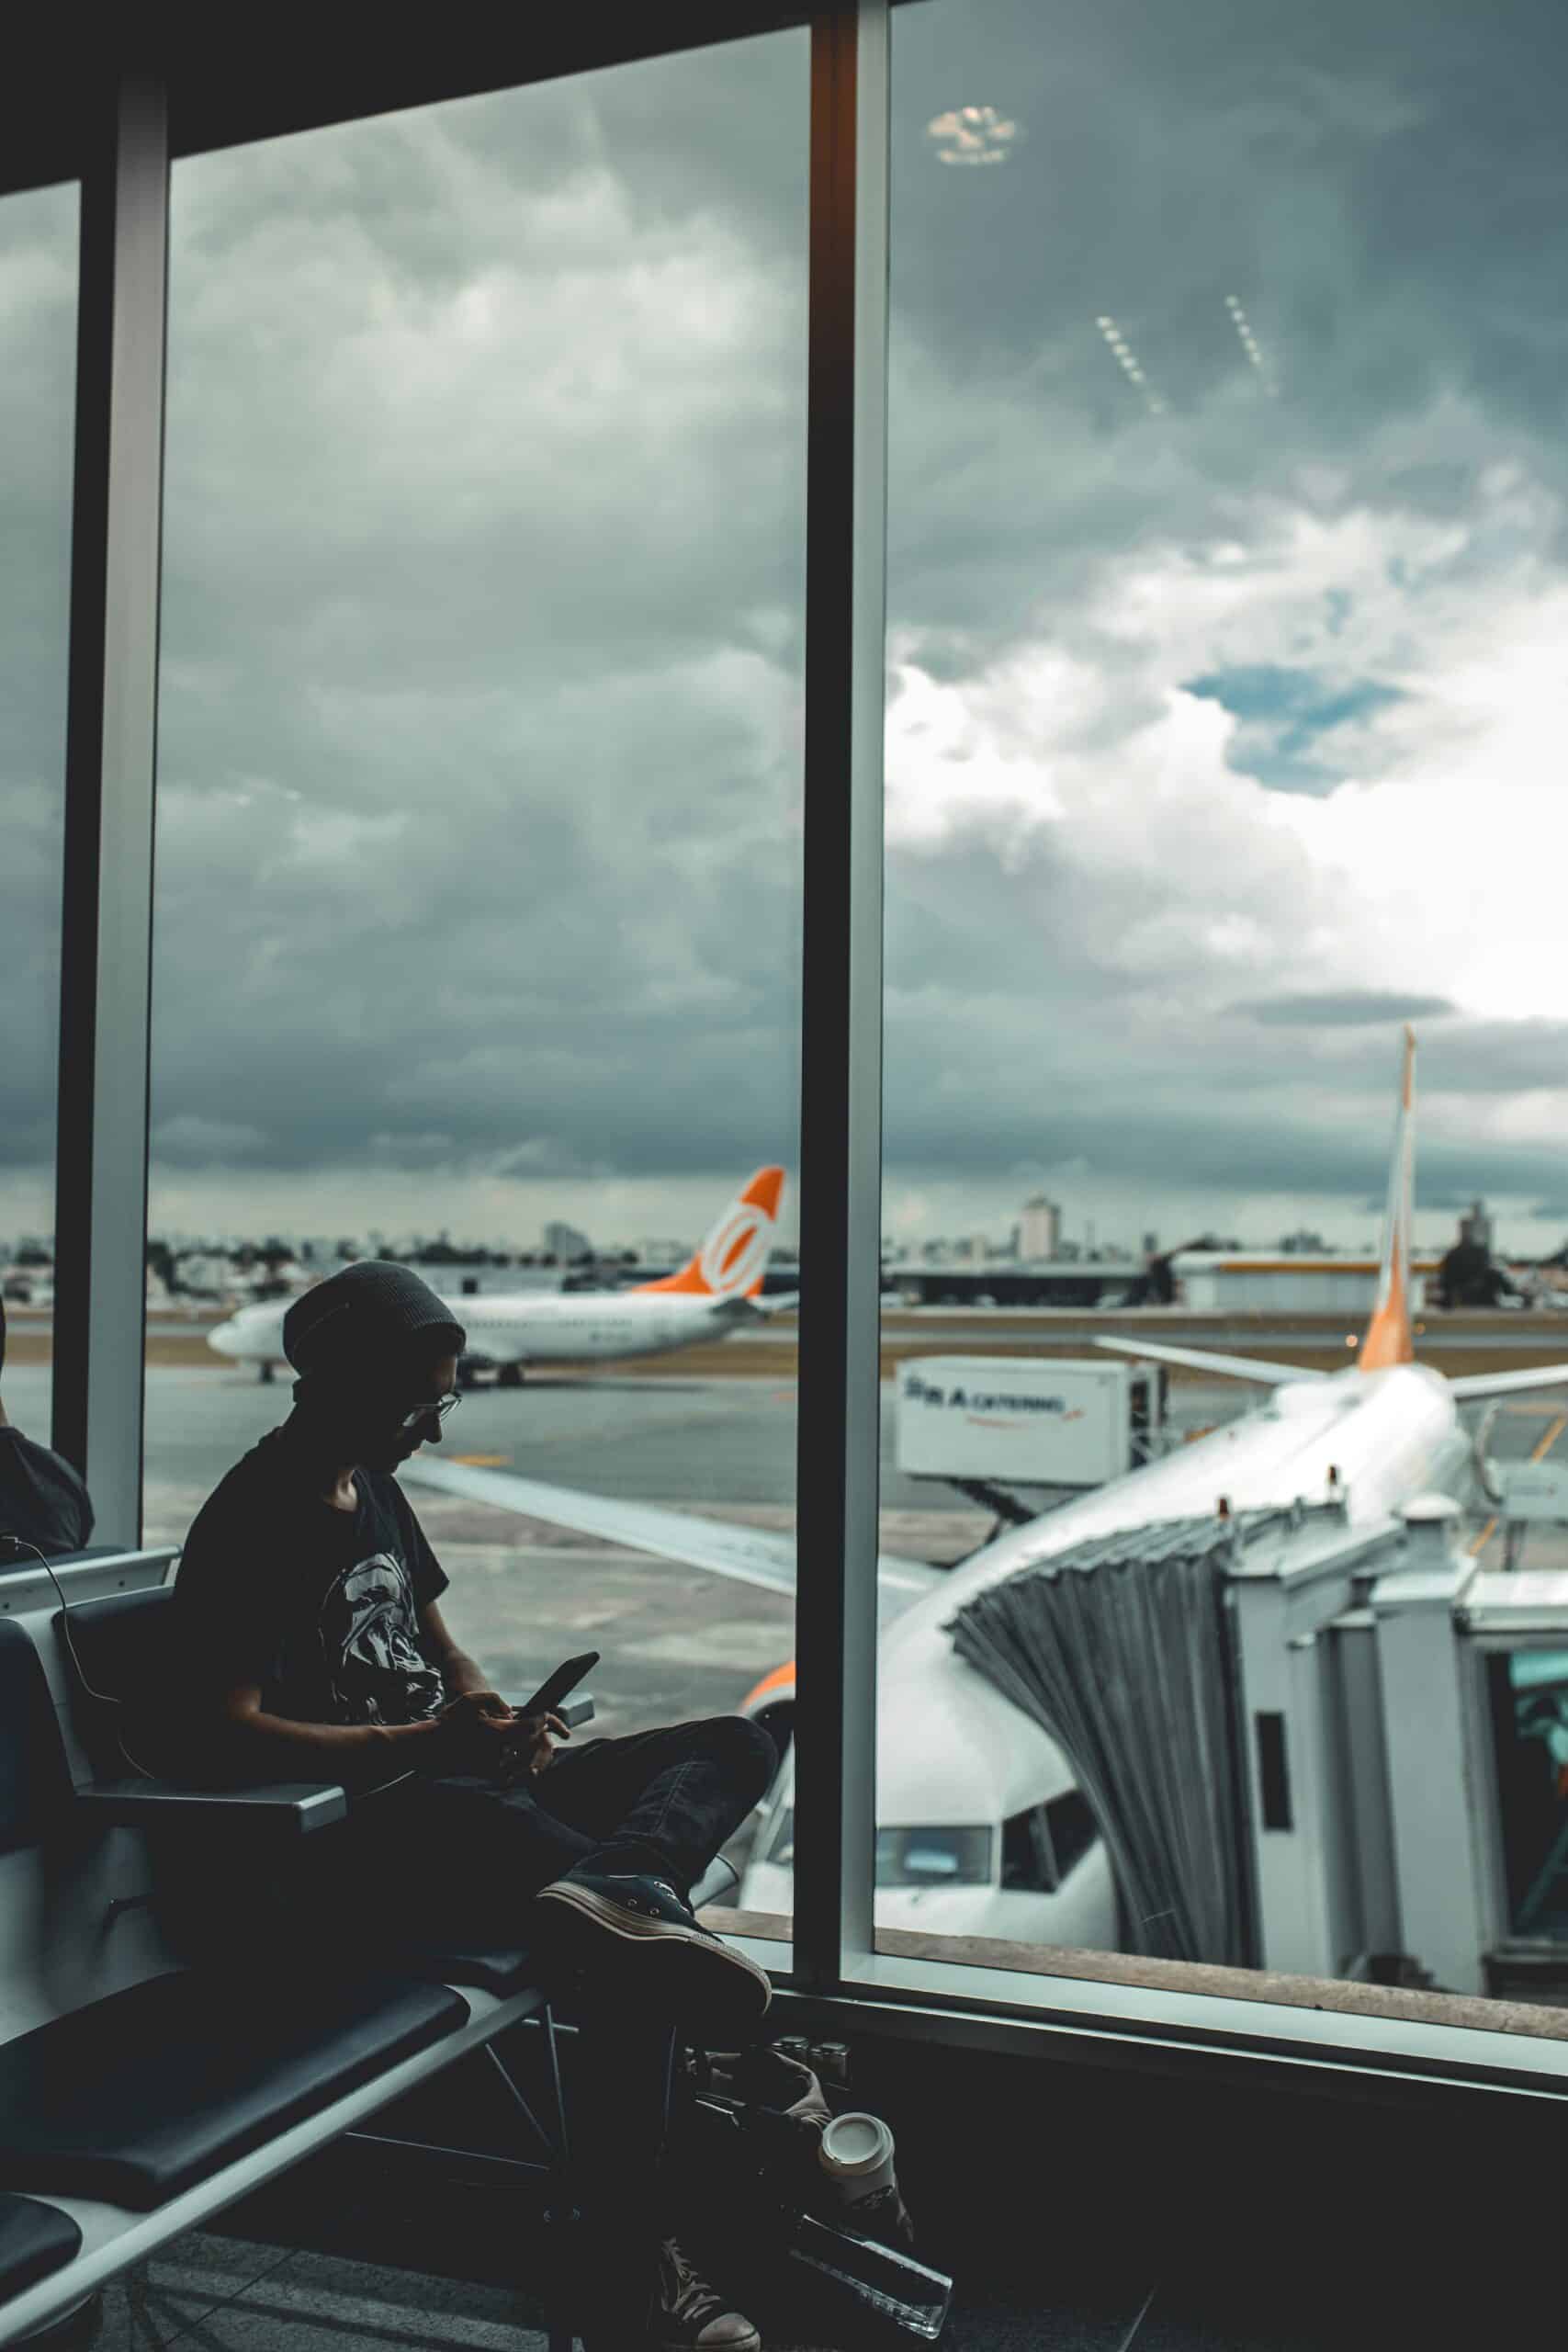 jovem homem sentado à esquerda da imagem no aeroporto de interlagos, bem em frente as largas janelas do aeroporto com vista para alguns aviões da companhia Gol